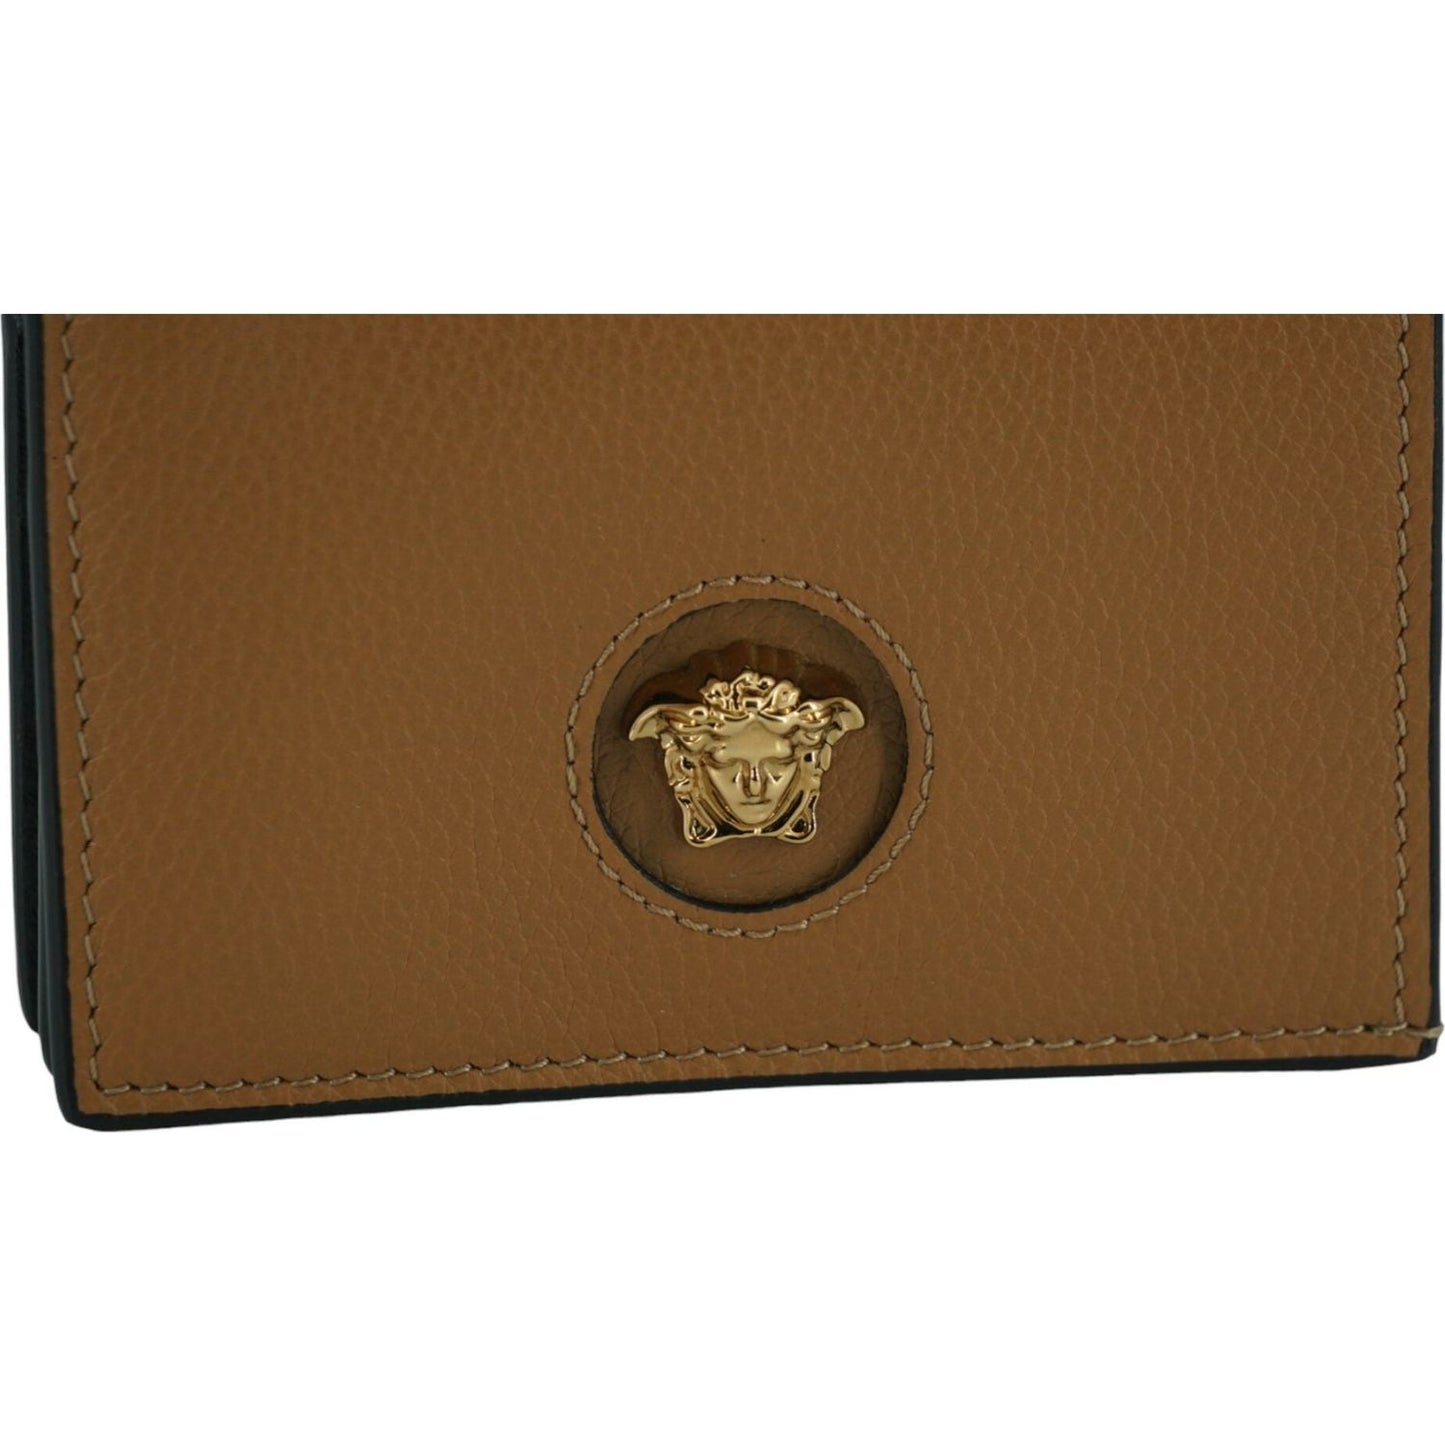 Versace | Elegant Compact Leather Wallet in Brown| McRichard Designer Brands   